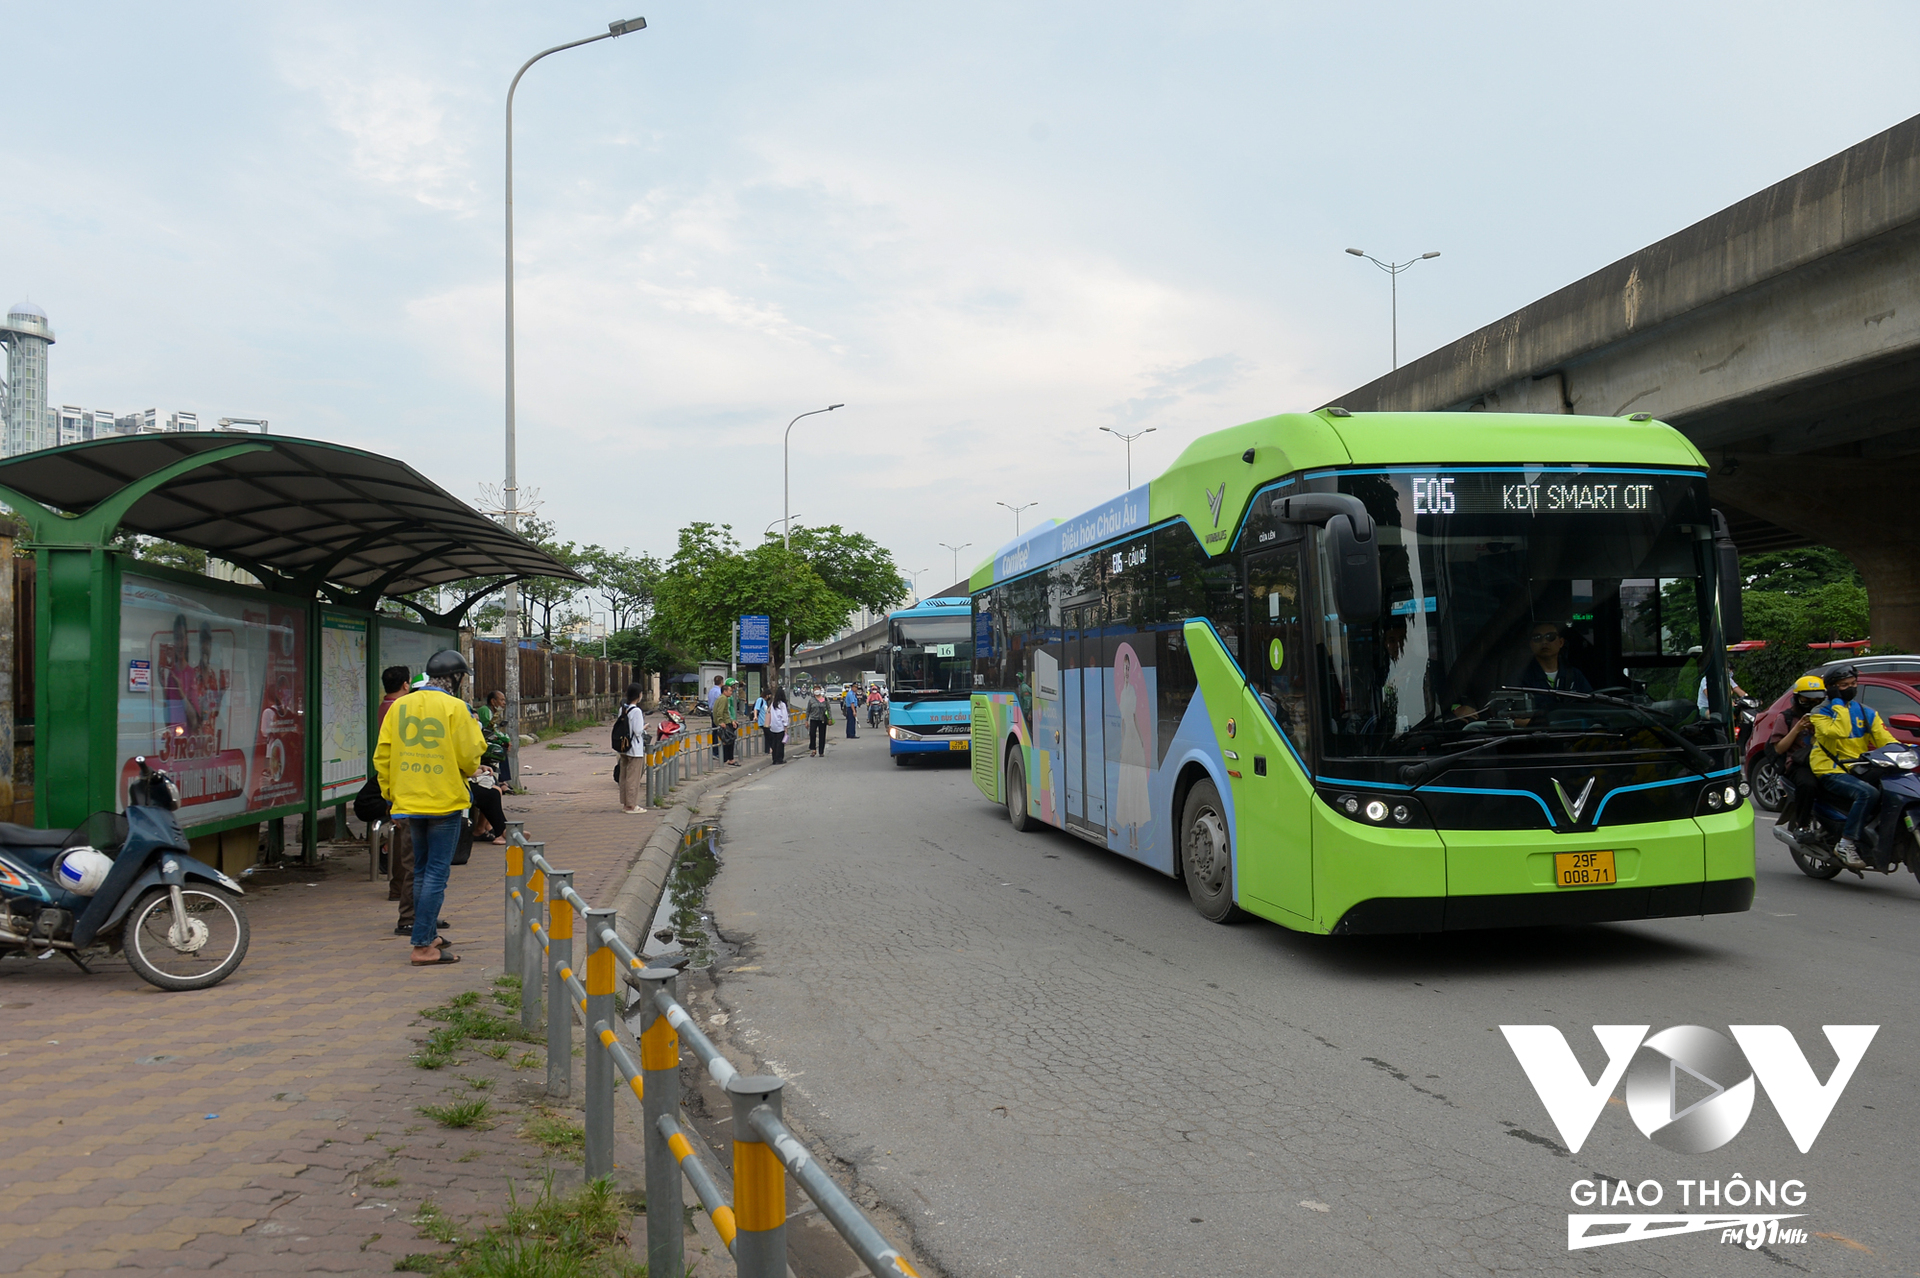 Khu vực bến xe buýt trên đường Phạm Hùng, đối diện bến xe Mỹ Đình trước đây các xe khách hay tạt vào đón khách, nhận hàng, lấn làn xe buýt. Từ khi có phương án mới 'nắn dòng' từ xa đối với xe khách thì xe buýt ra vào bến thuận tiện hơn.